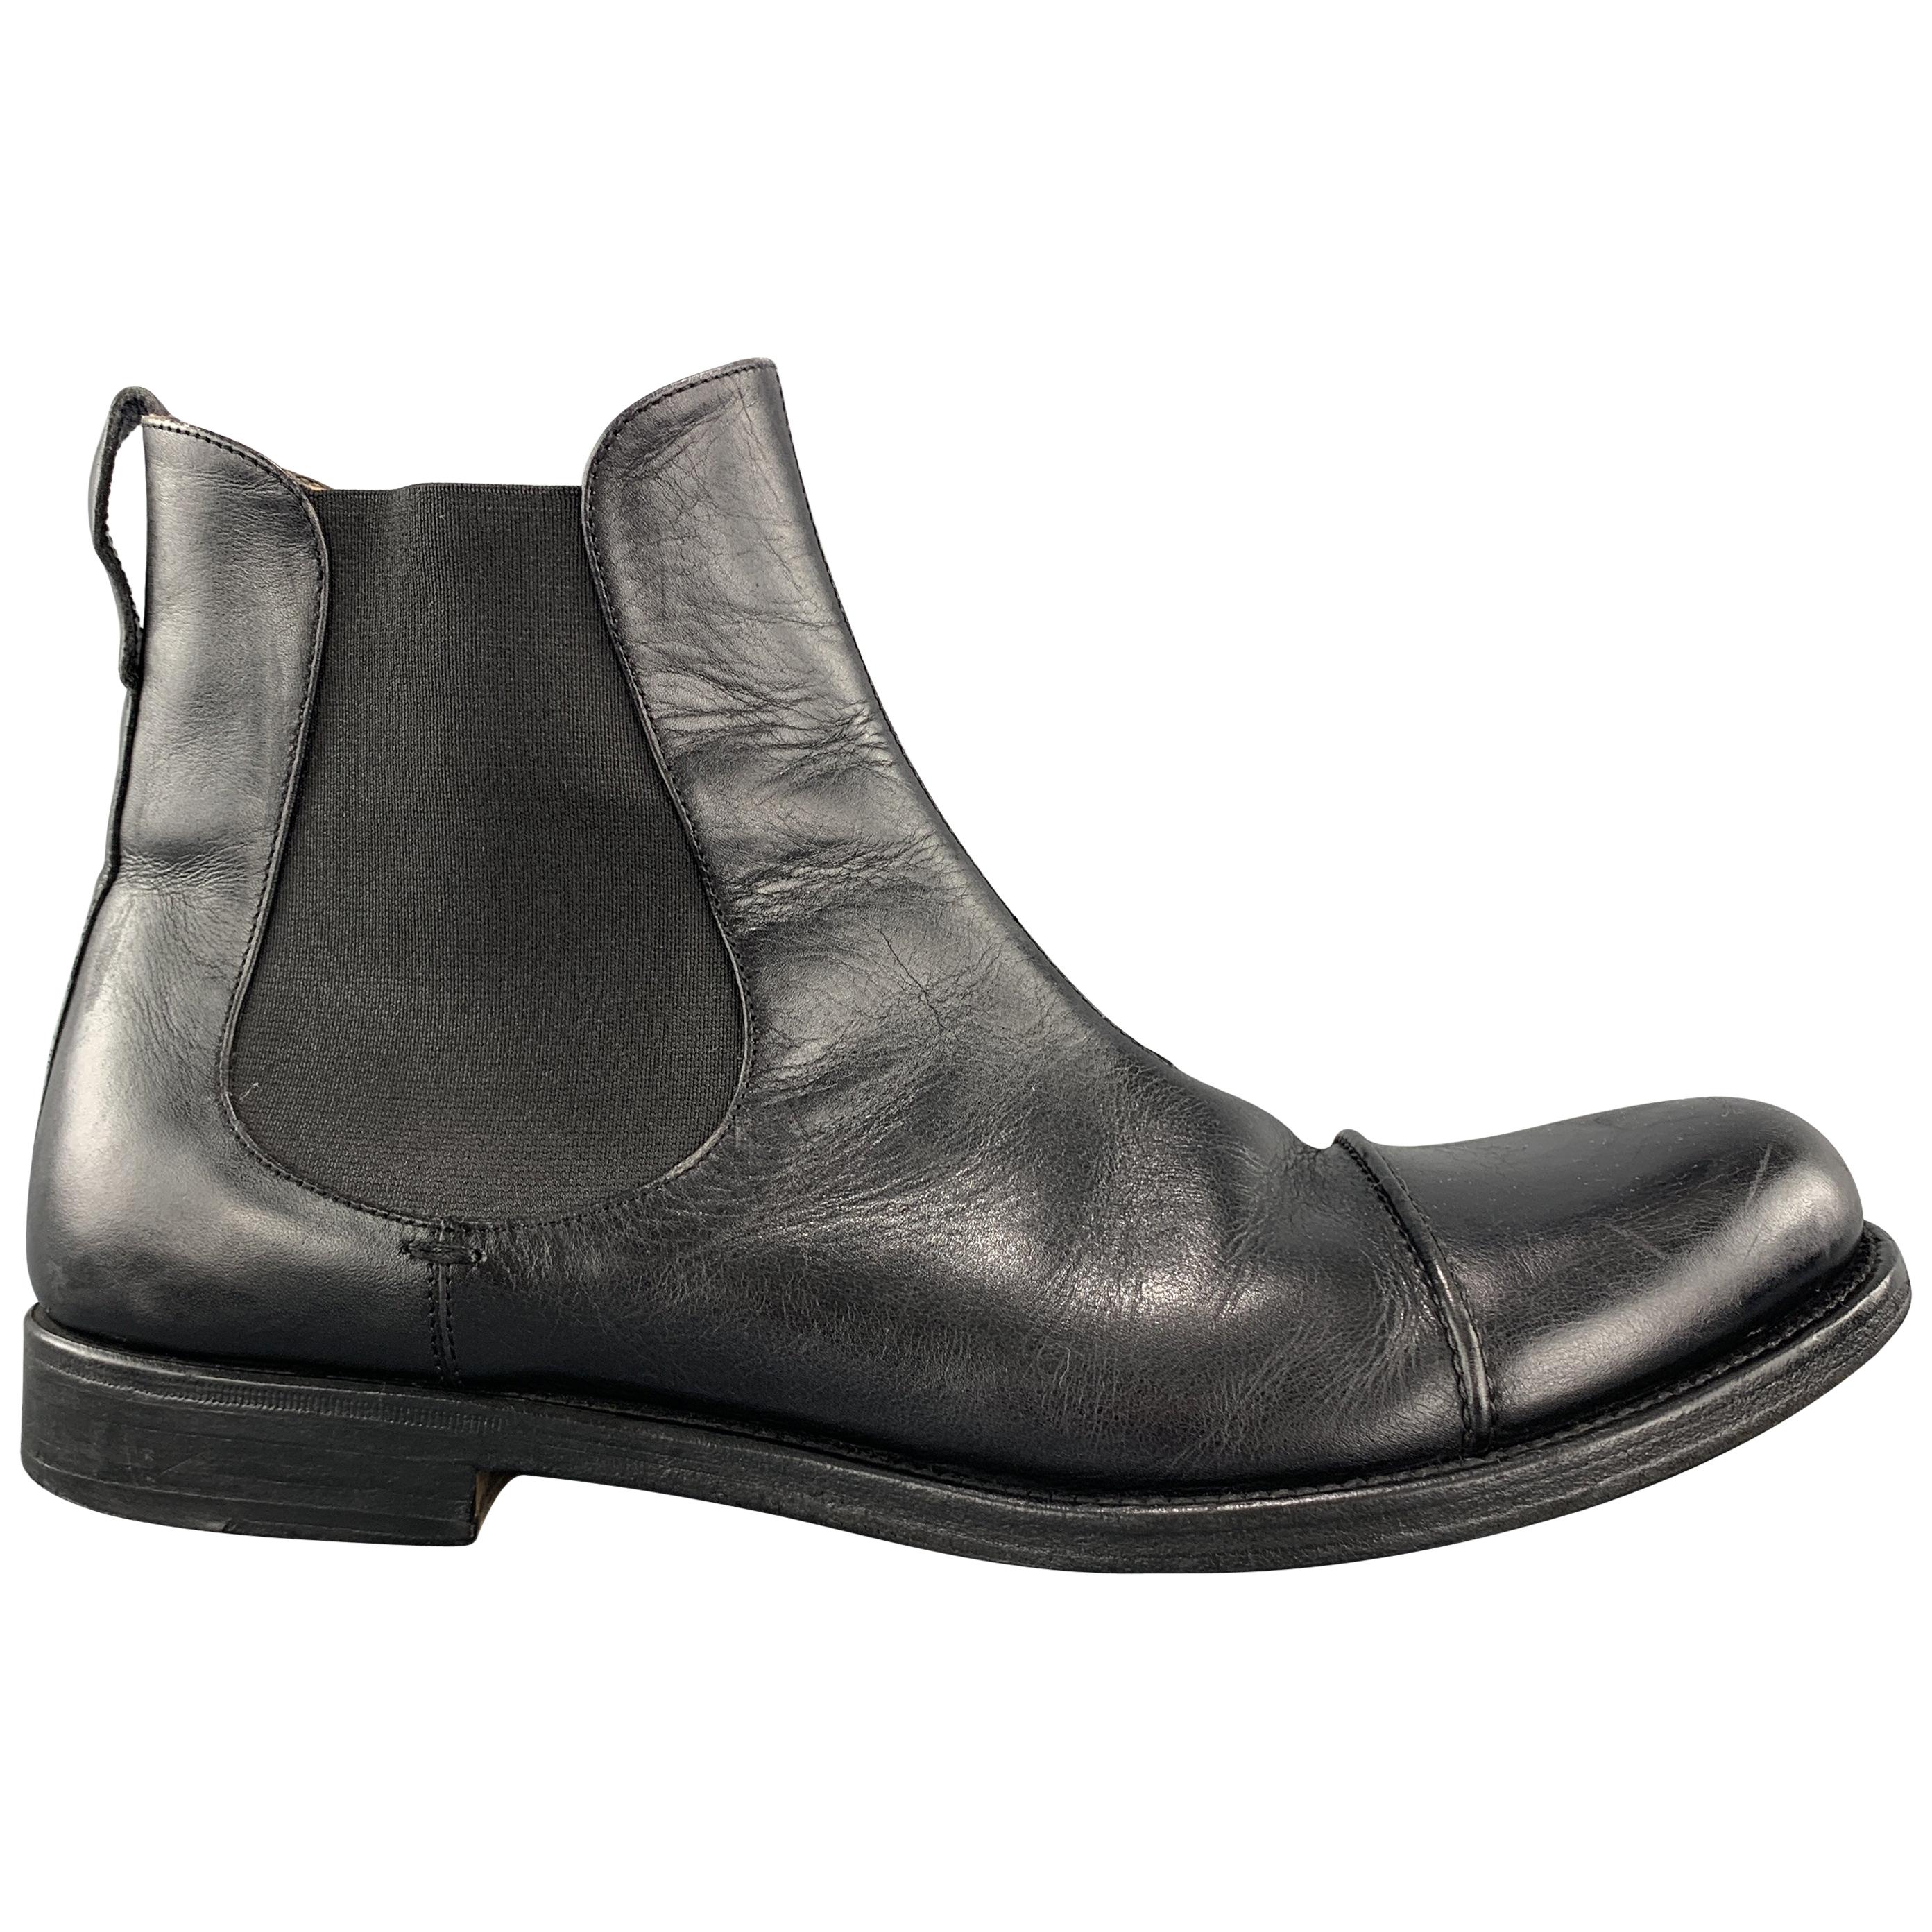 YVES SAINT LAURENT Size 9 Black Leather Toe Cap Chelsea Boots